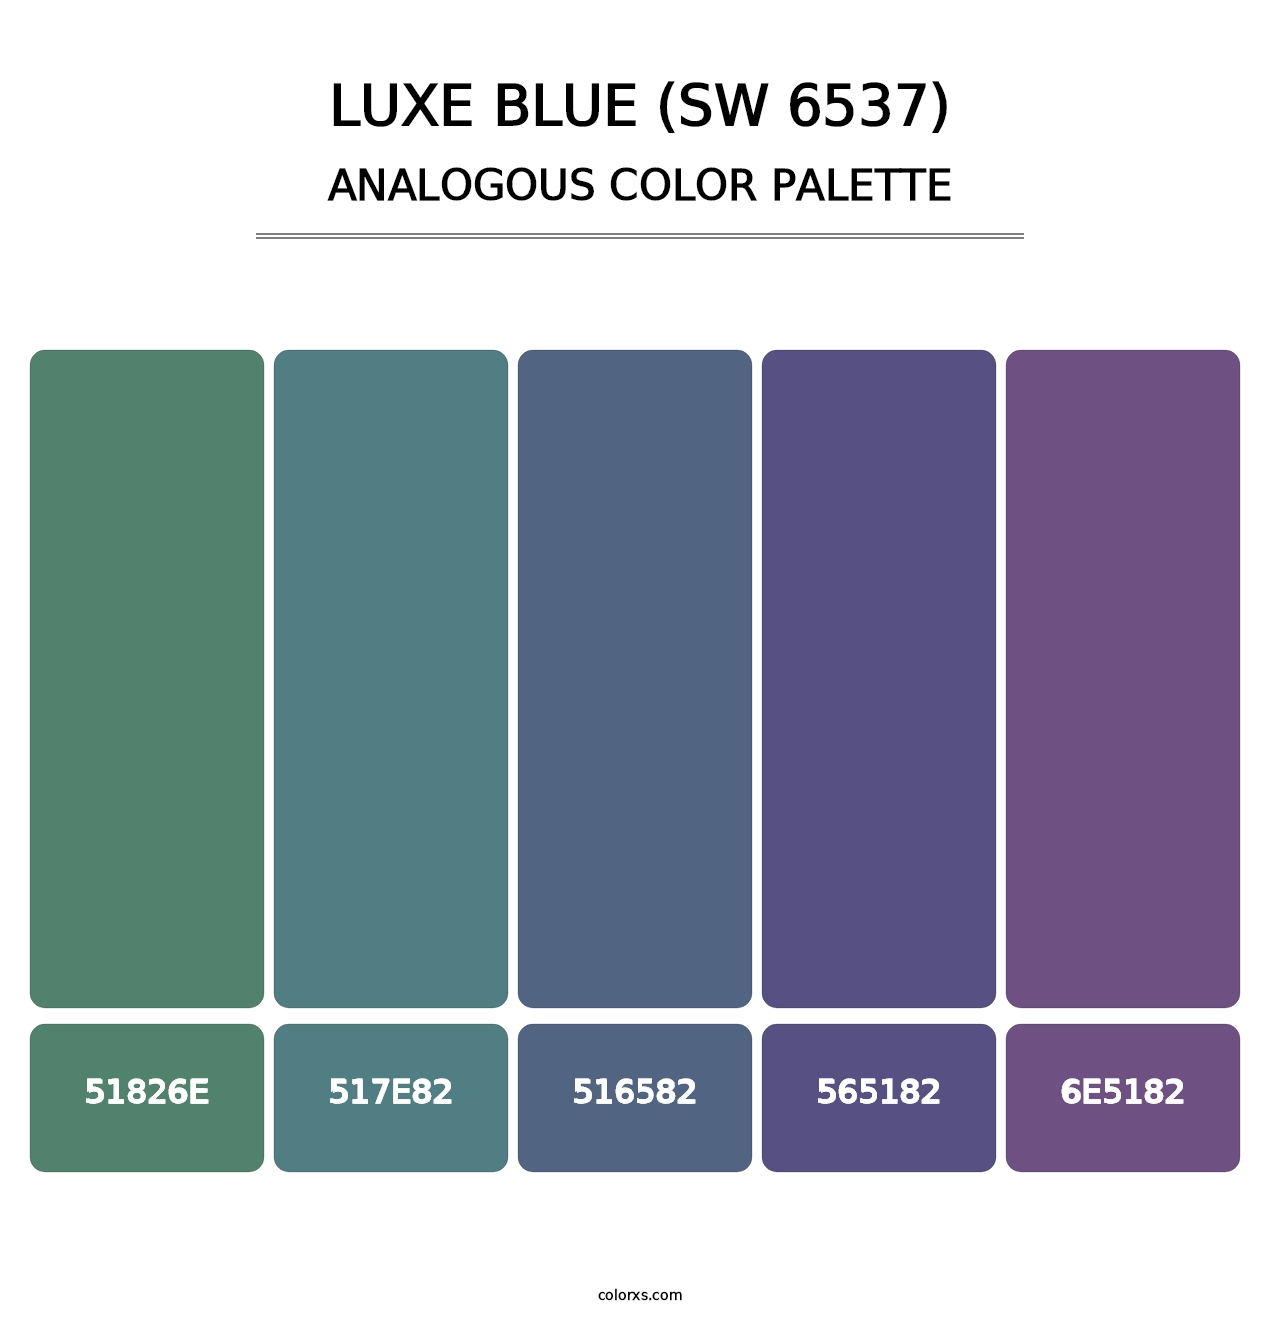 Luxe Blue (SW 6537) - Analogous Color Palette